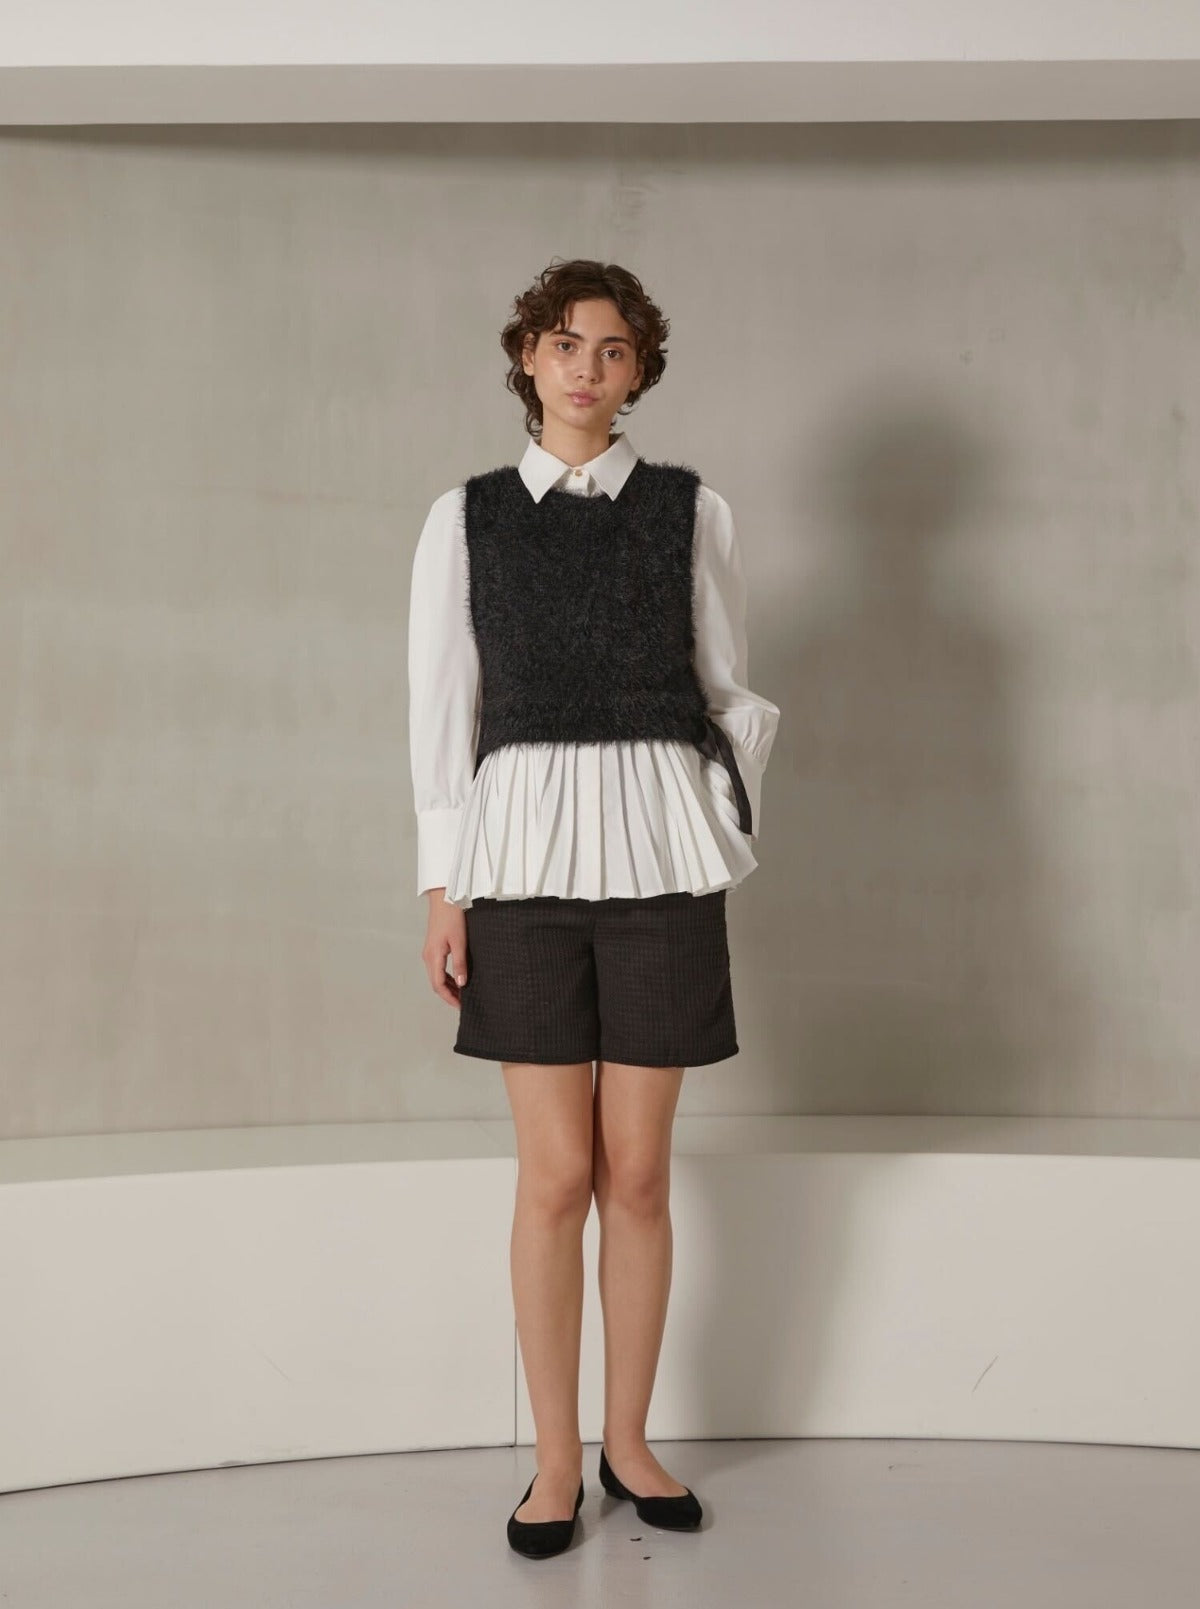 pleats shirt "knit vest set"